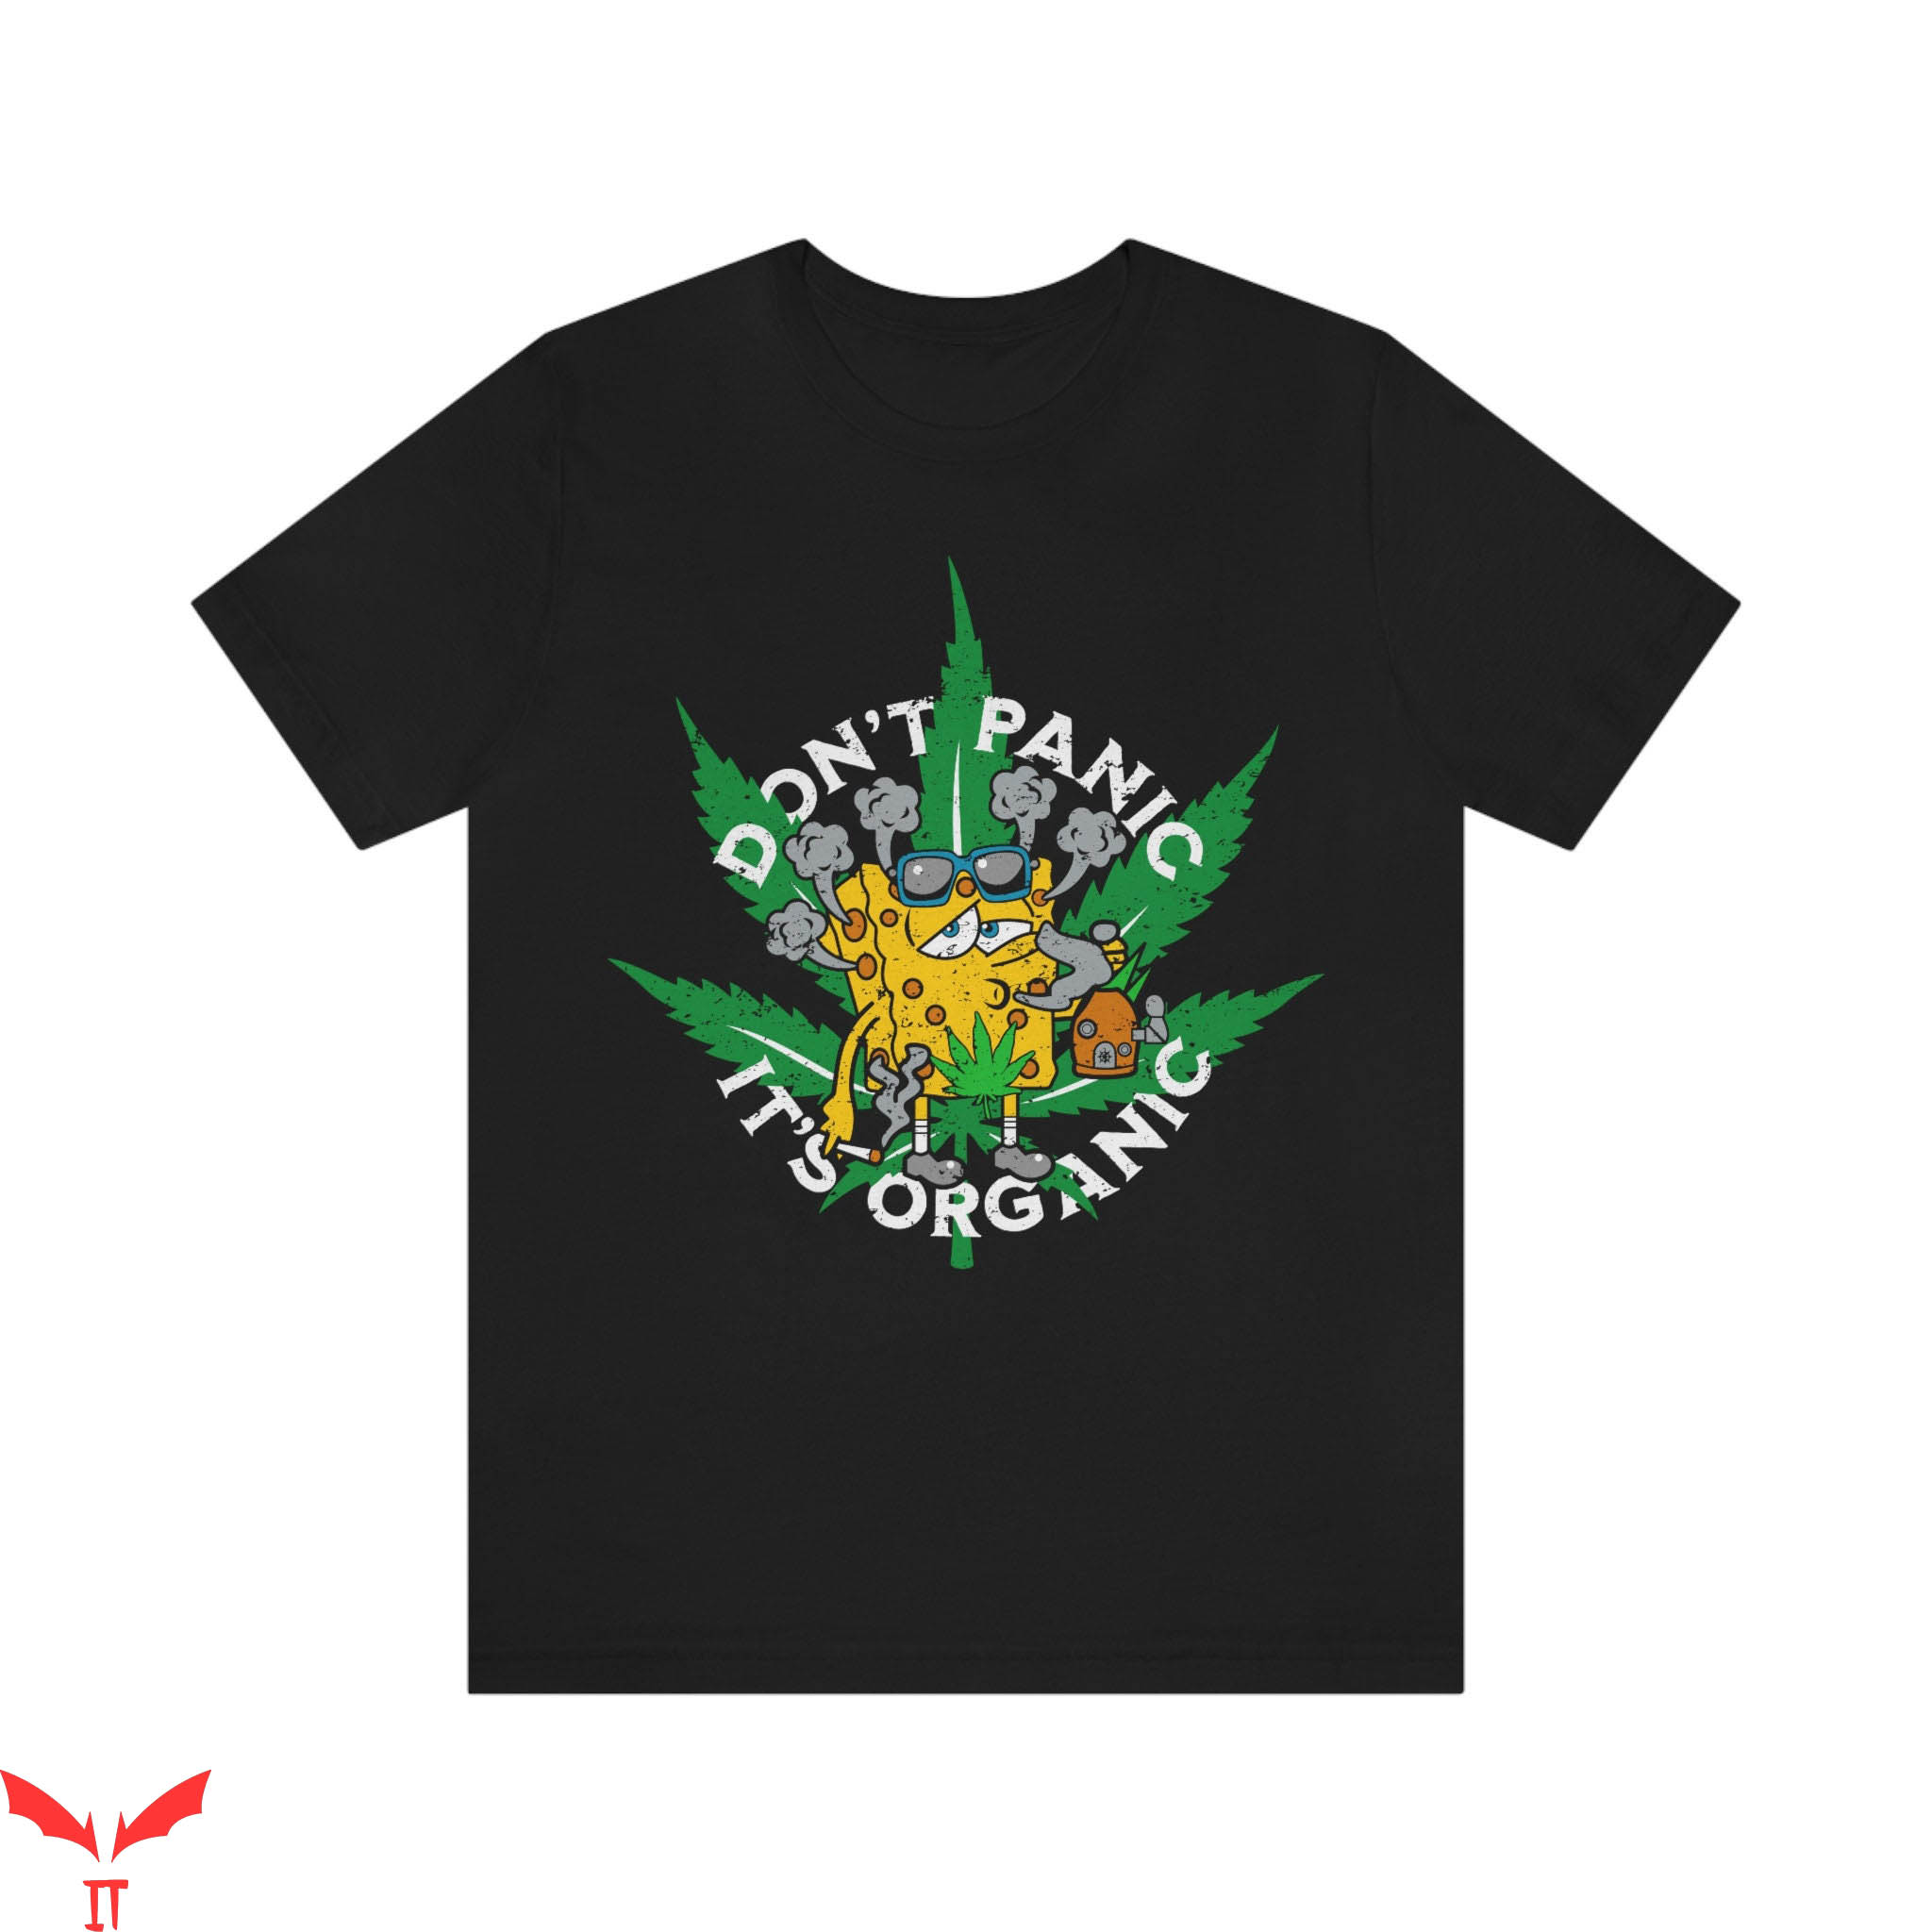 Gangster Spongebob T-Shirt Chilled Out Marijuana Fun Tee